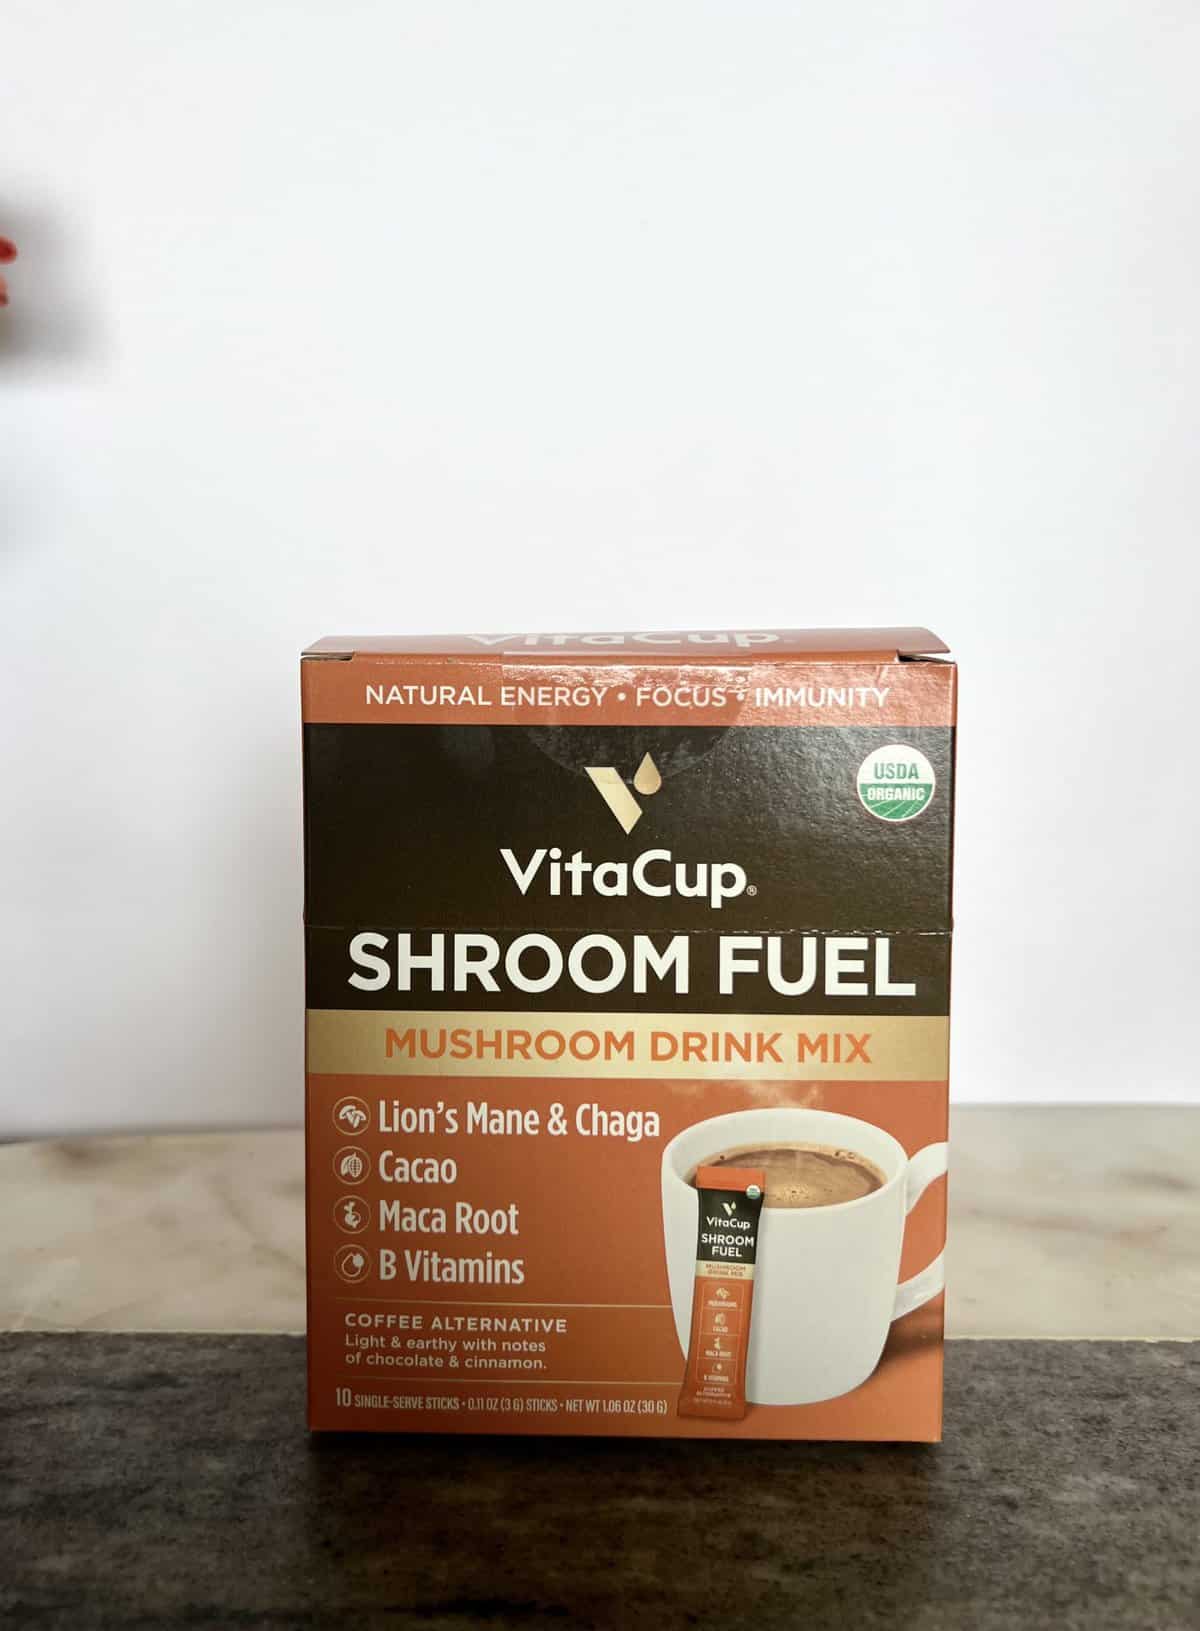 VitaCup-Shroom-Fuel-Mushroom-Based-Coffee-scaled